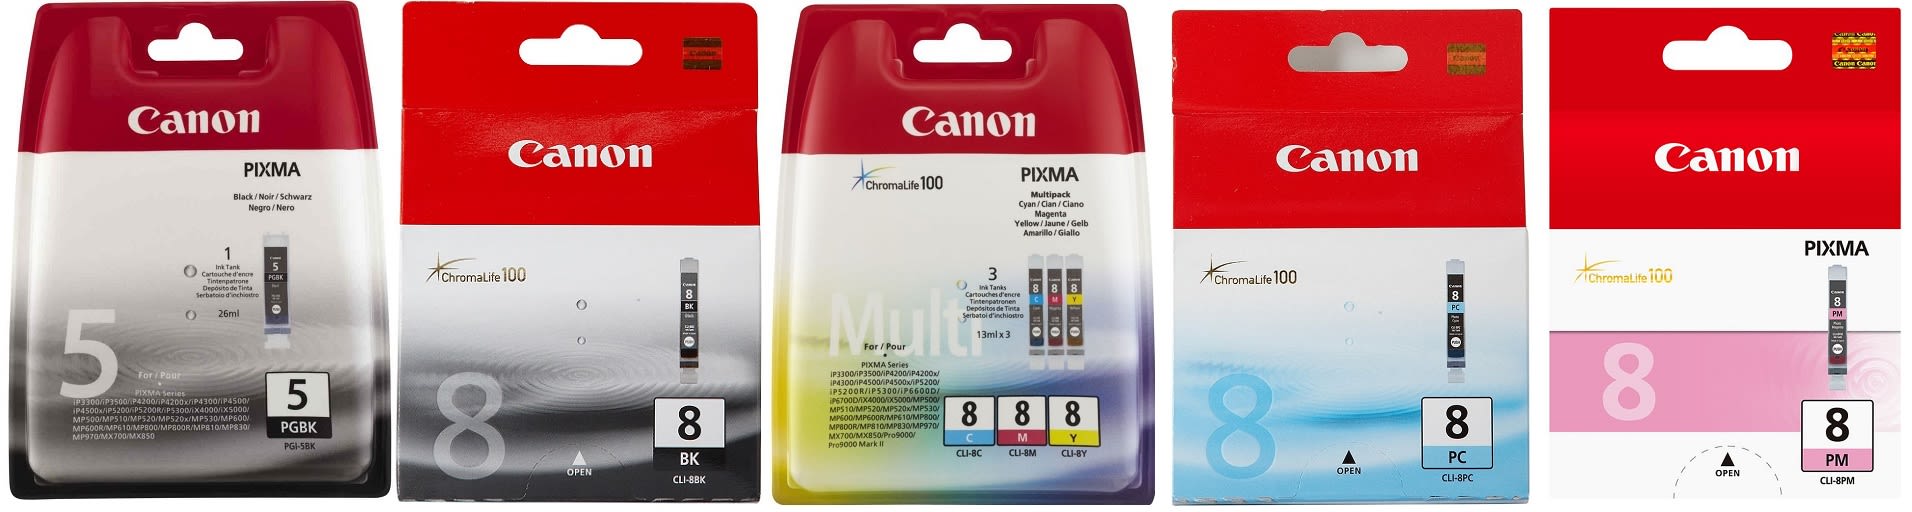 Картридж для Canon Pixma IP6600 Купить комплект оригинальных чернил.